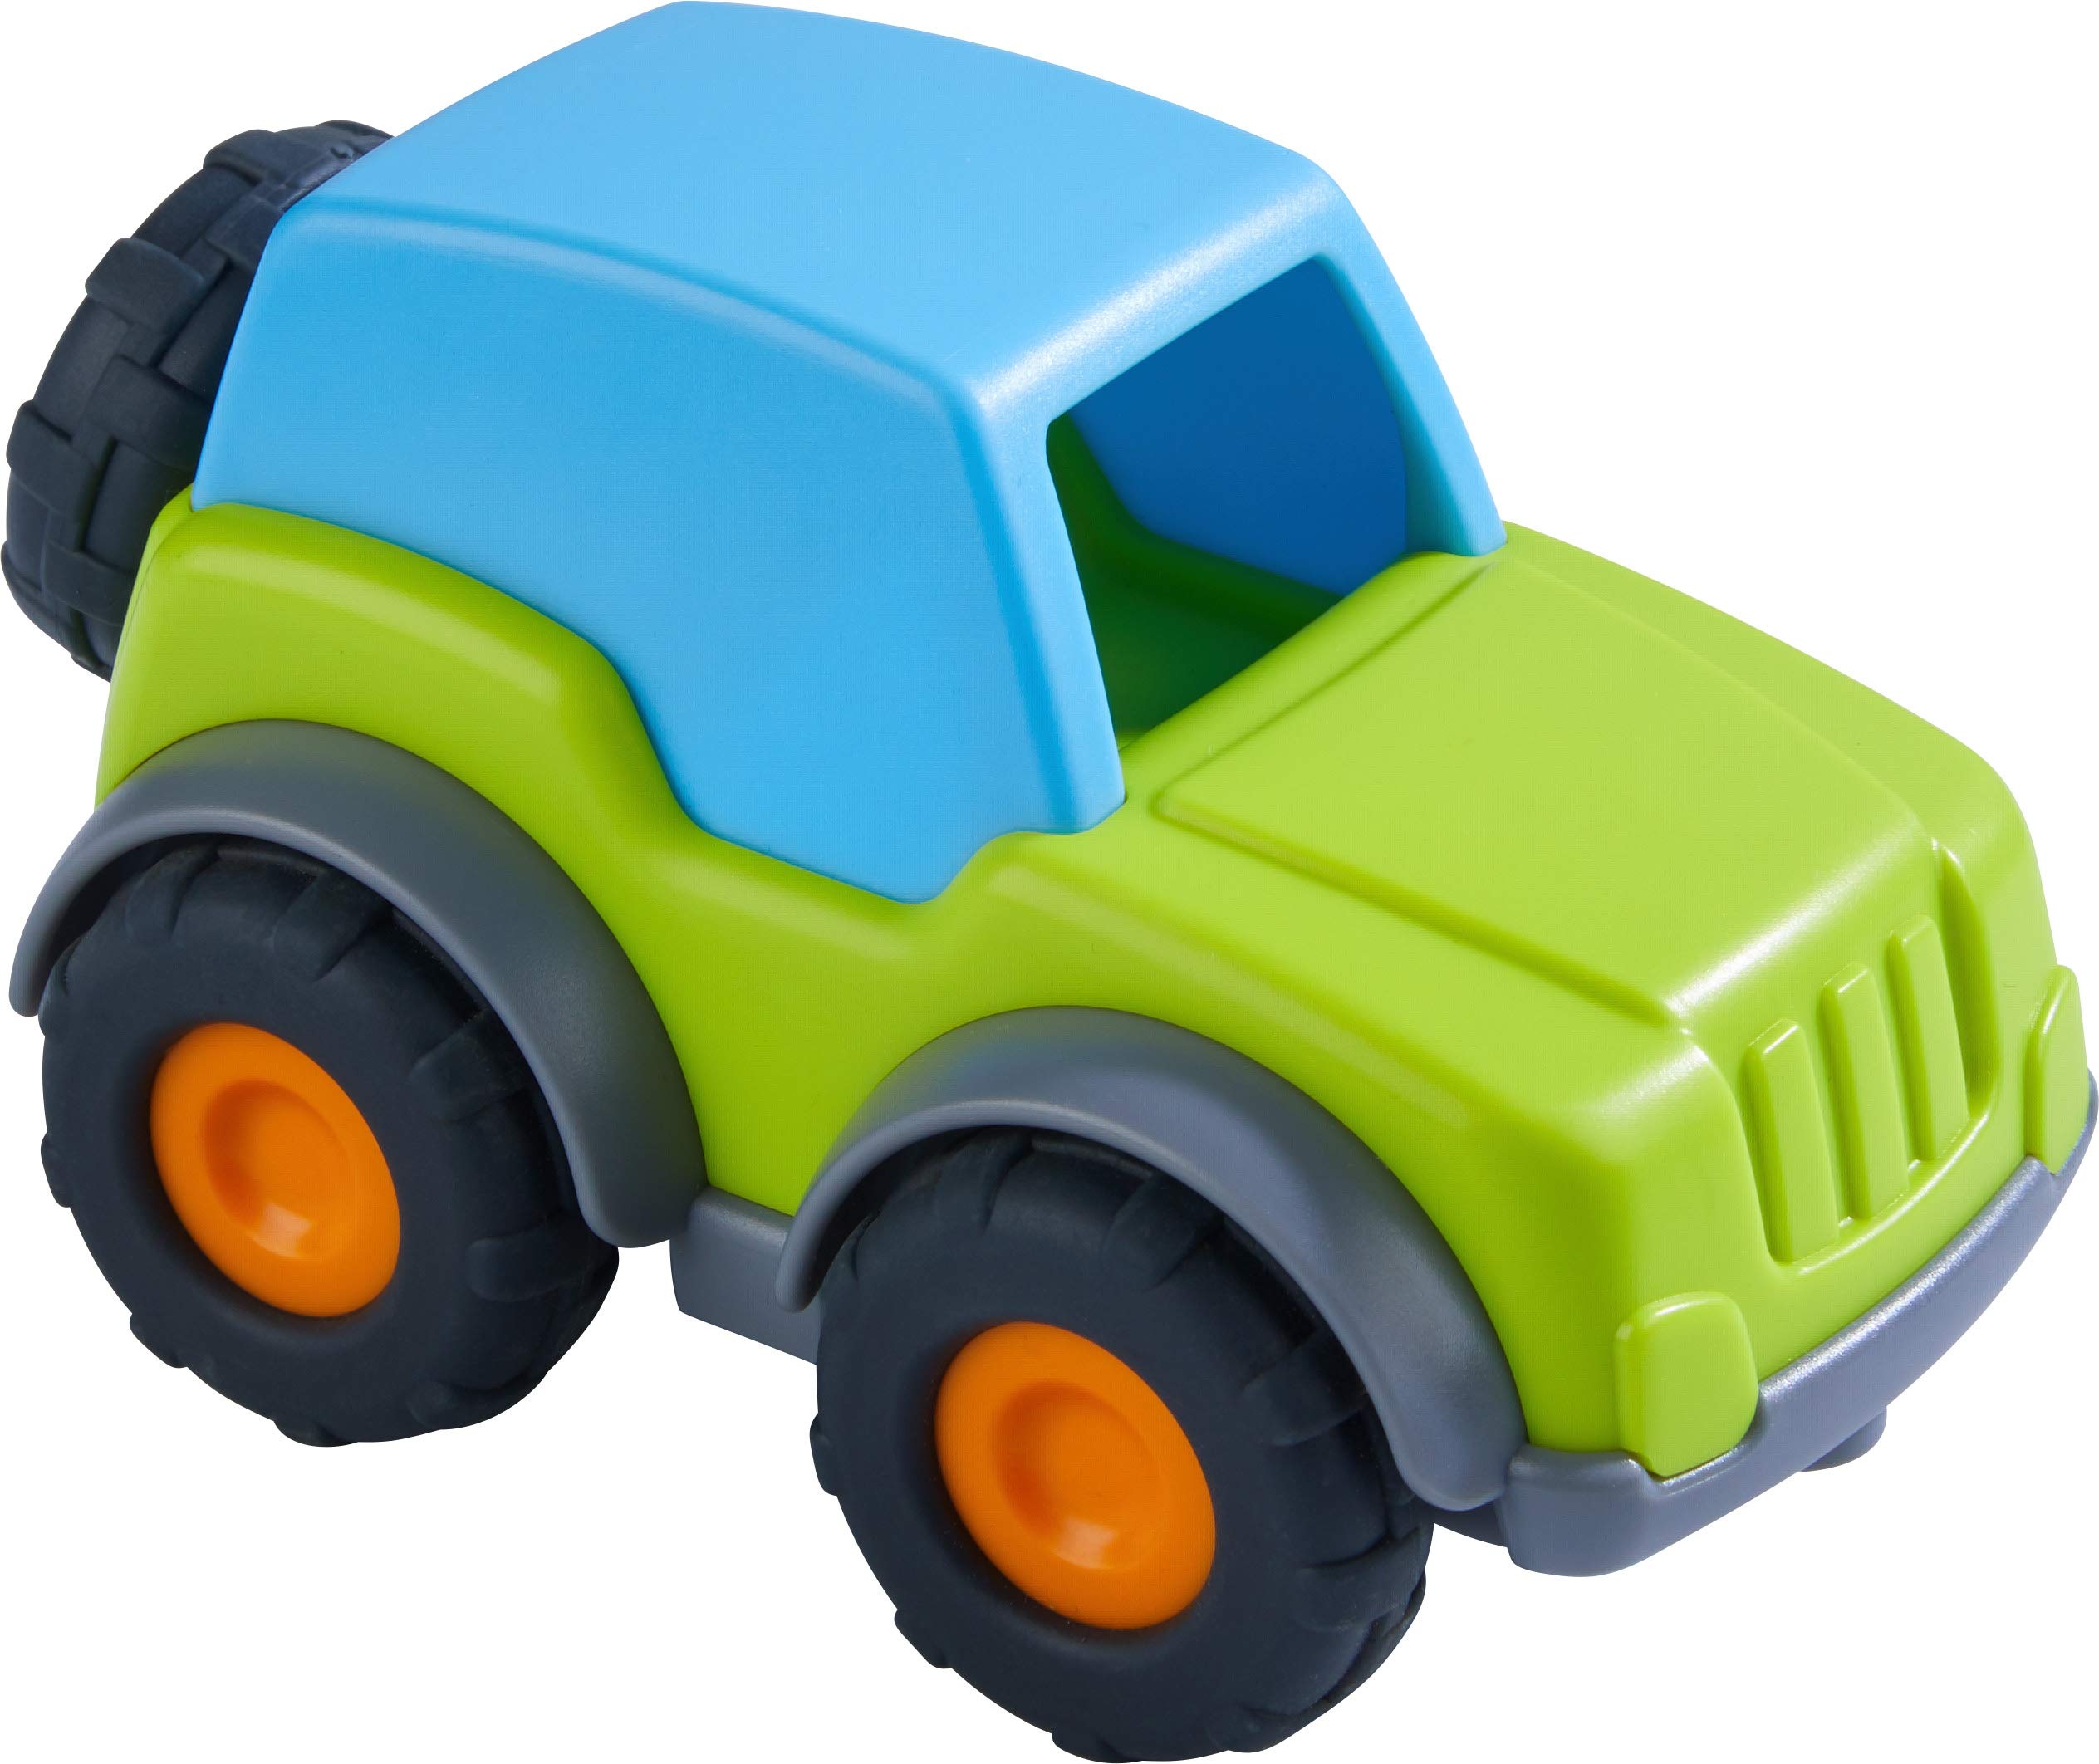 HABA 305178 - Spielzeugauto Geländewagen, Spielauto für Kinder ab 2 Jahren für drinnen und draußen, Geländewagen 13 cm mit Ersatzrad für Mädchen und Jungen